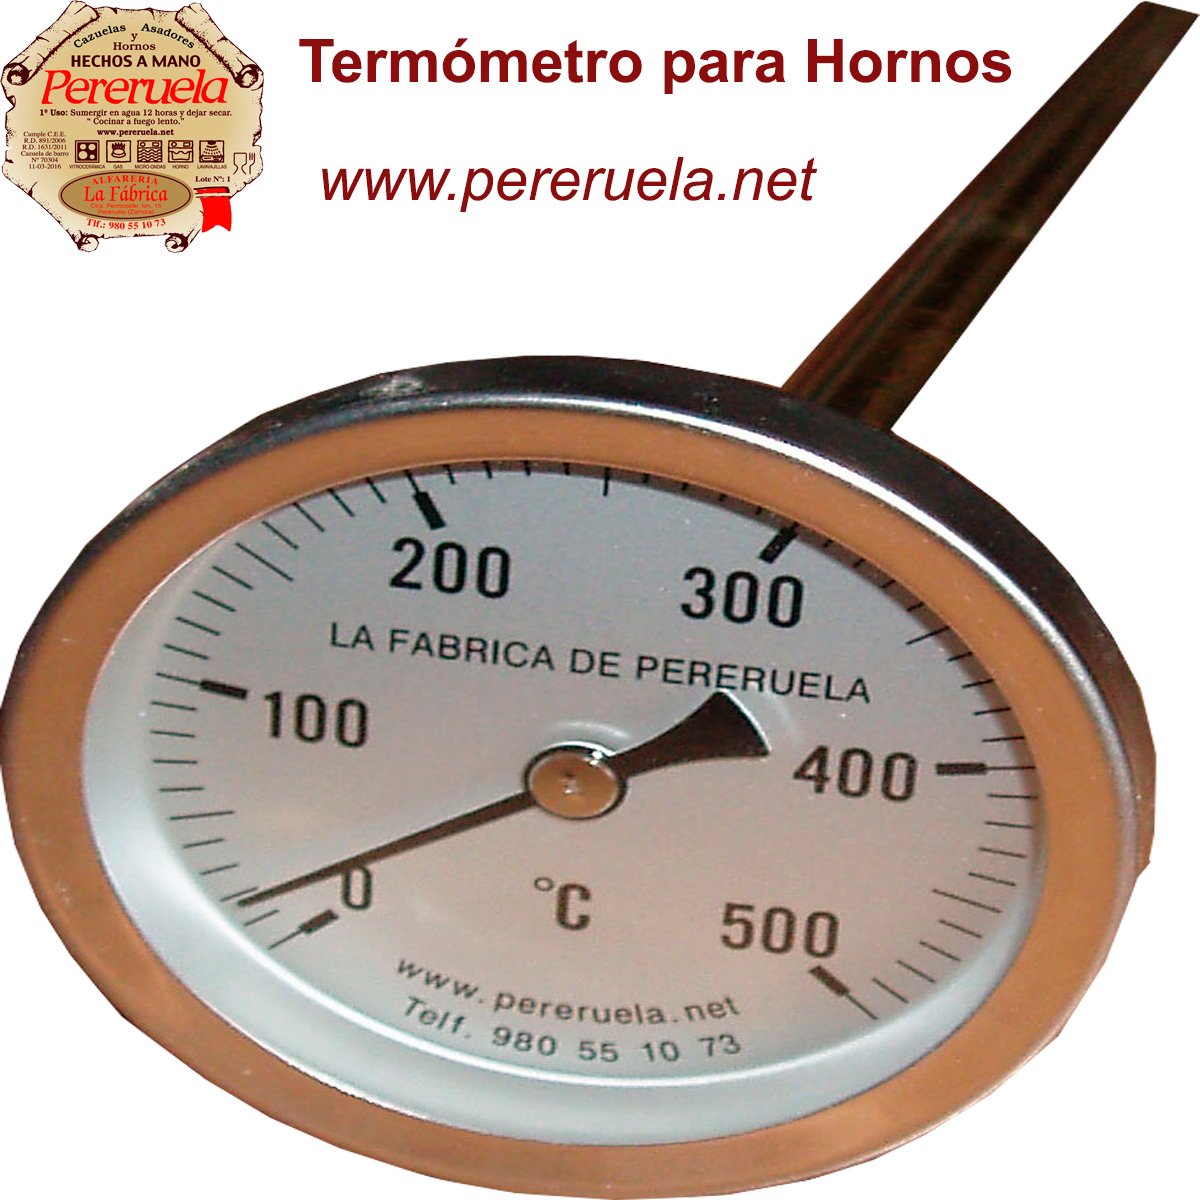 Termómetro para Horno - Termómetro de 50º a 500º para horno de leña